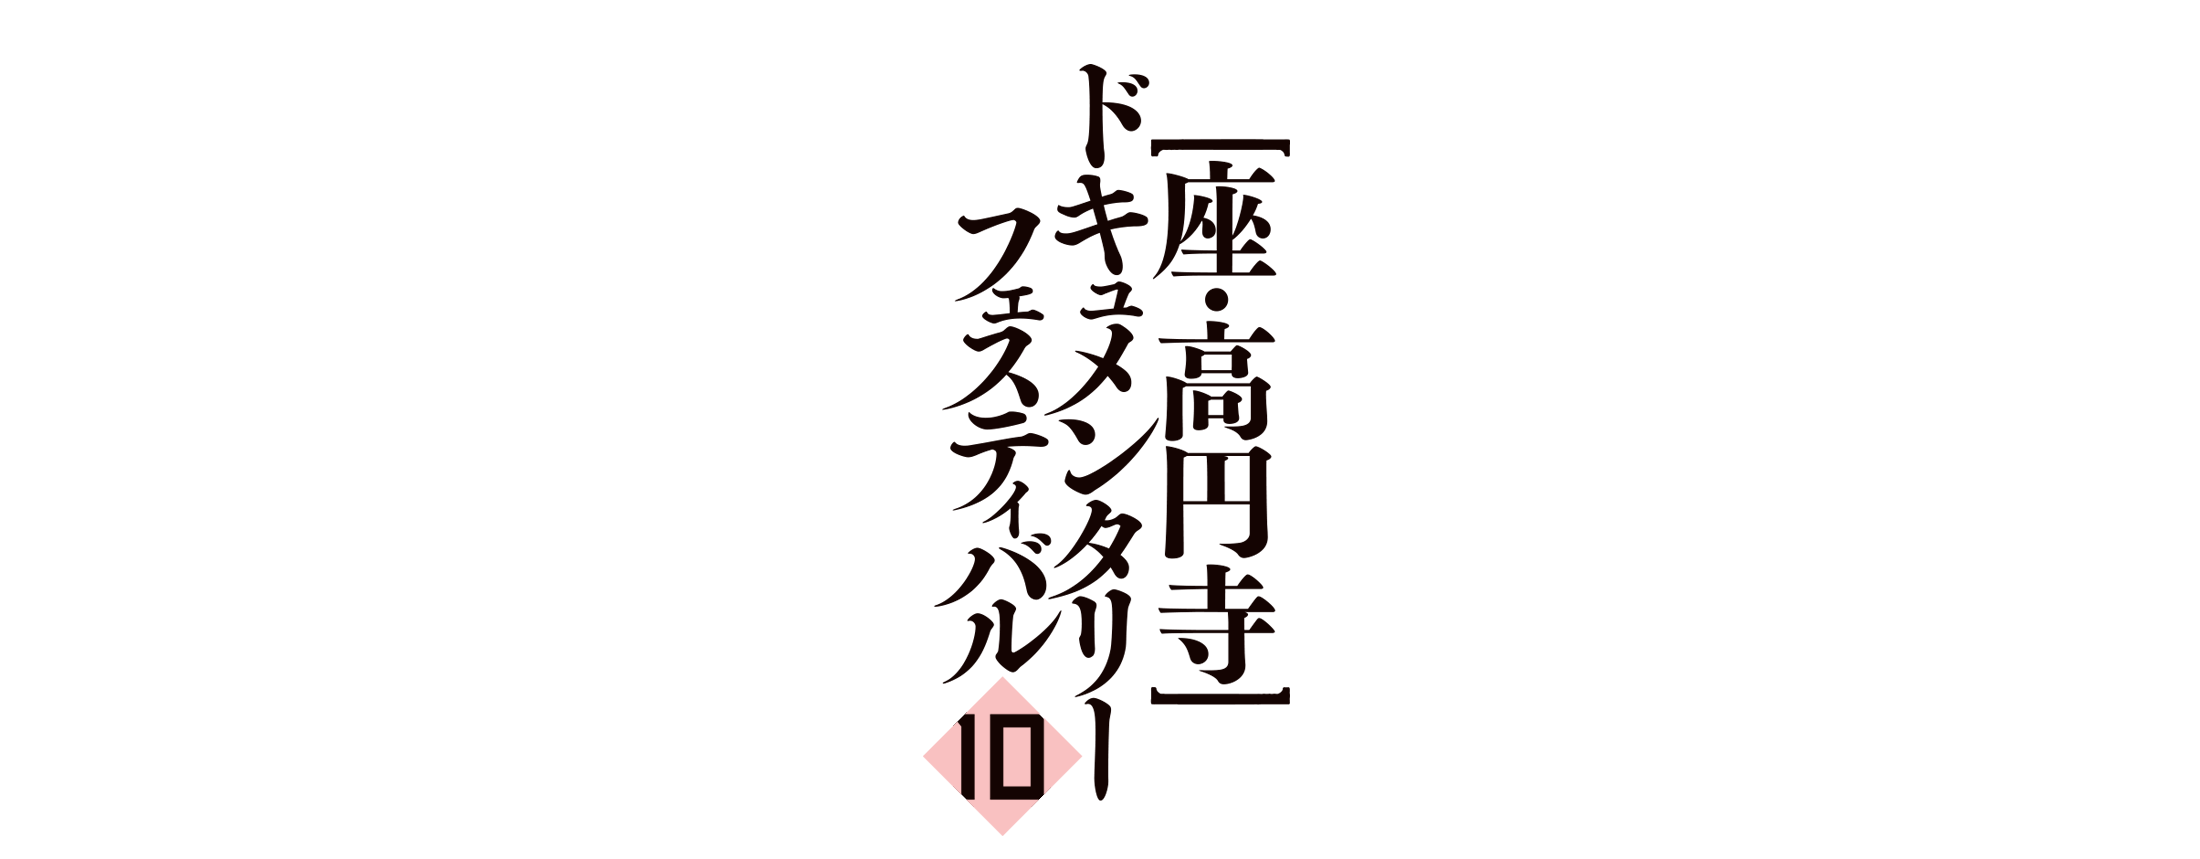 第10回 座・高円寺ドキュメンタリーフェスティバル